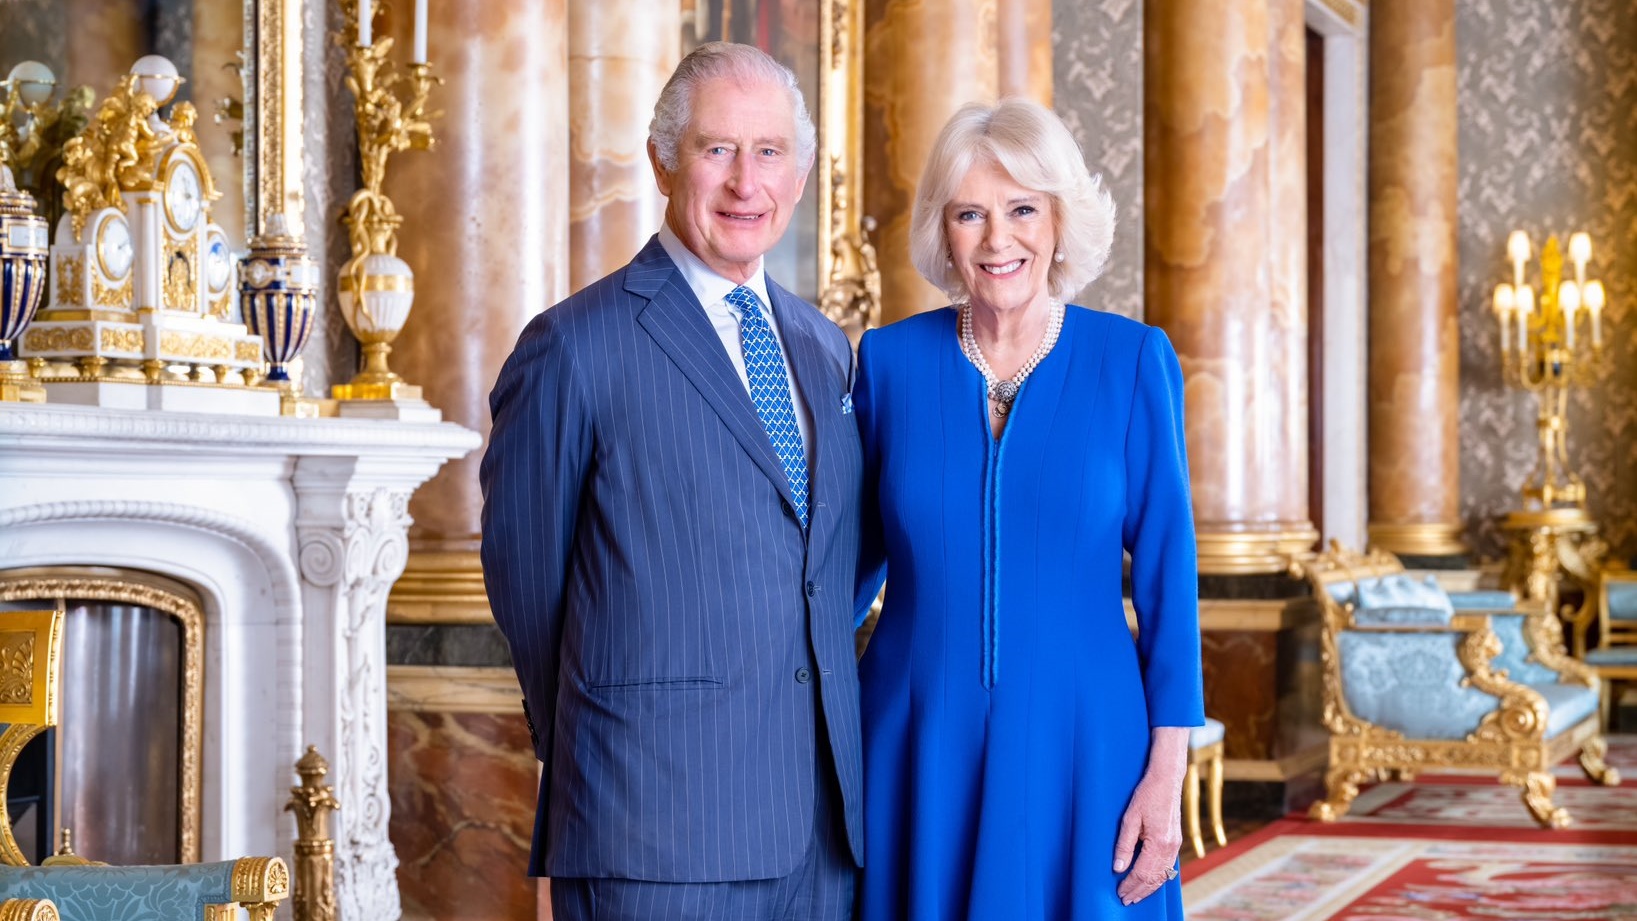 Kuningas Charlesin kruunajaiset ovat vuoden odotetuimpia tapahtumia. Hovi julkaisi lähestyvän juhlan kunniaksi uuden kuvan kuningasparista Buckinghamin palatsissa.